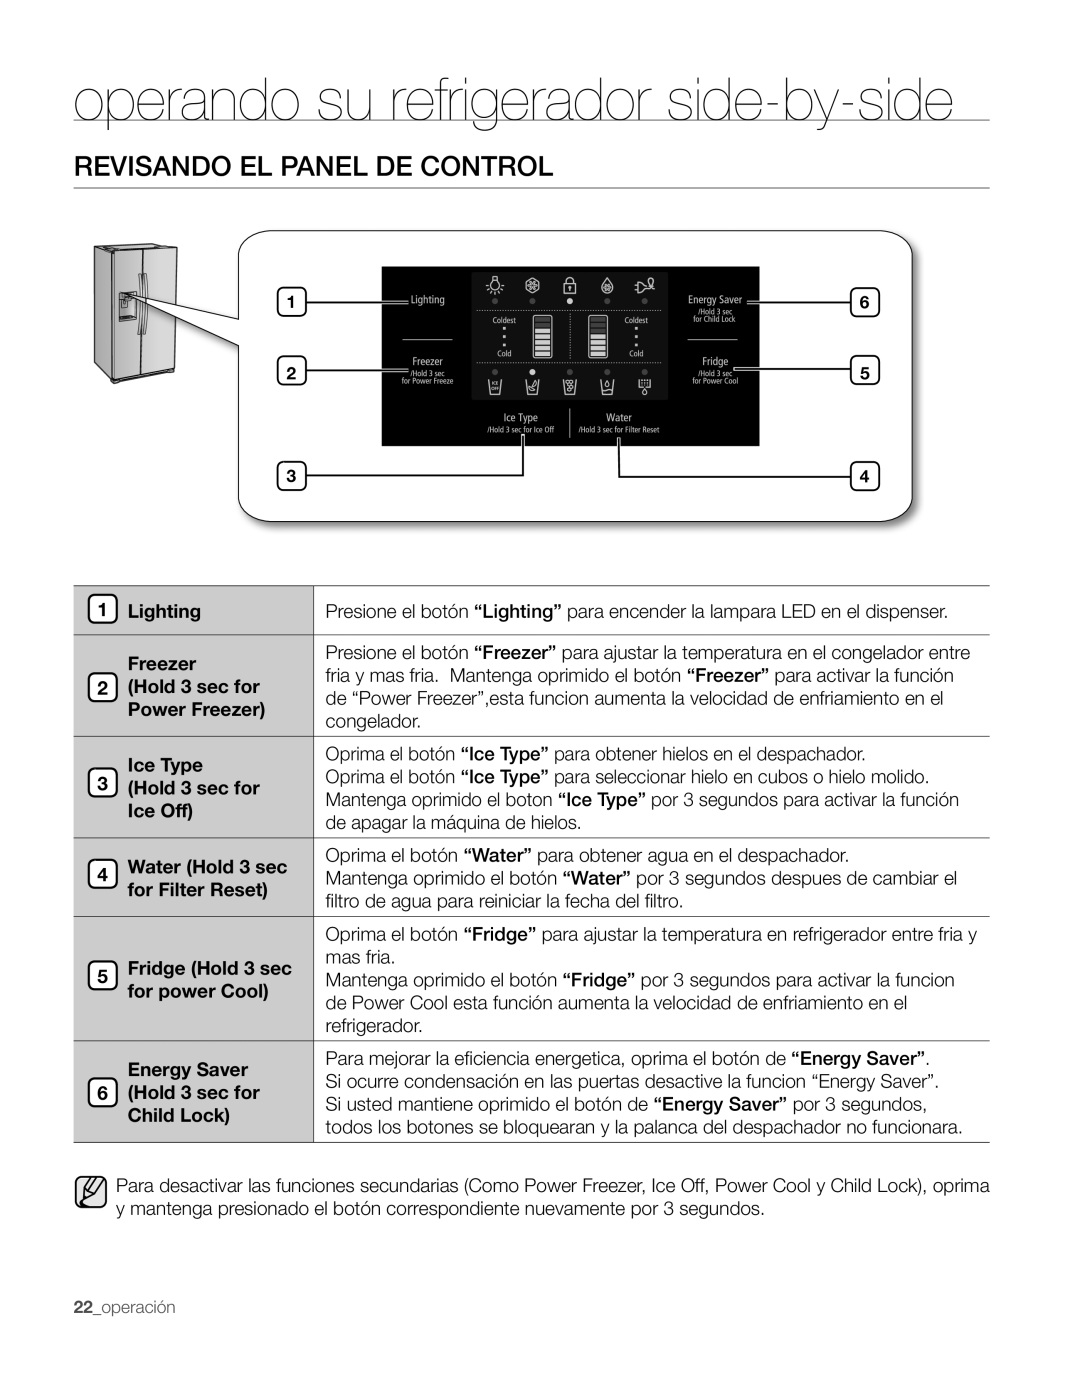 Samsung RS263TDRS, RS263TDPN, RS263TDWP, RS263TDBP operando su refrigerador side-by-side, Revisando El Panel De Control 